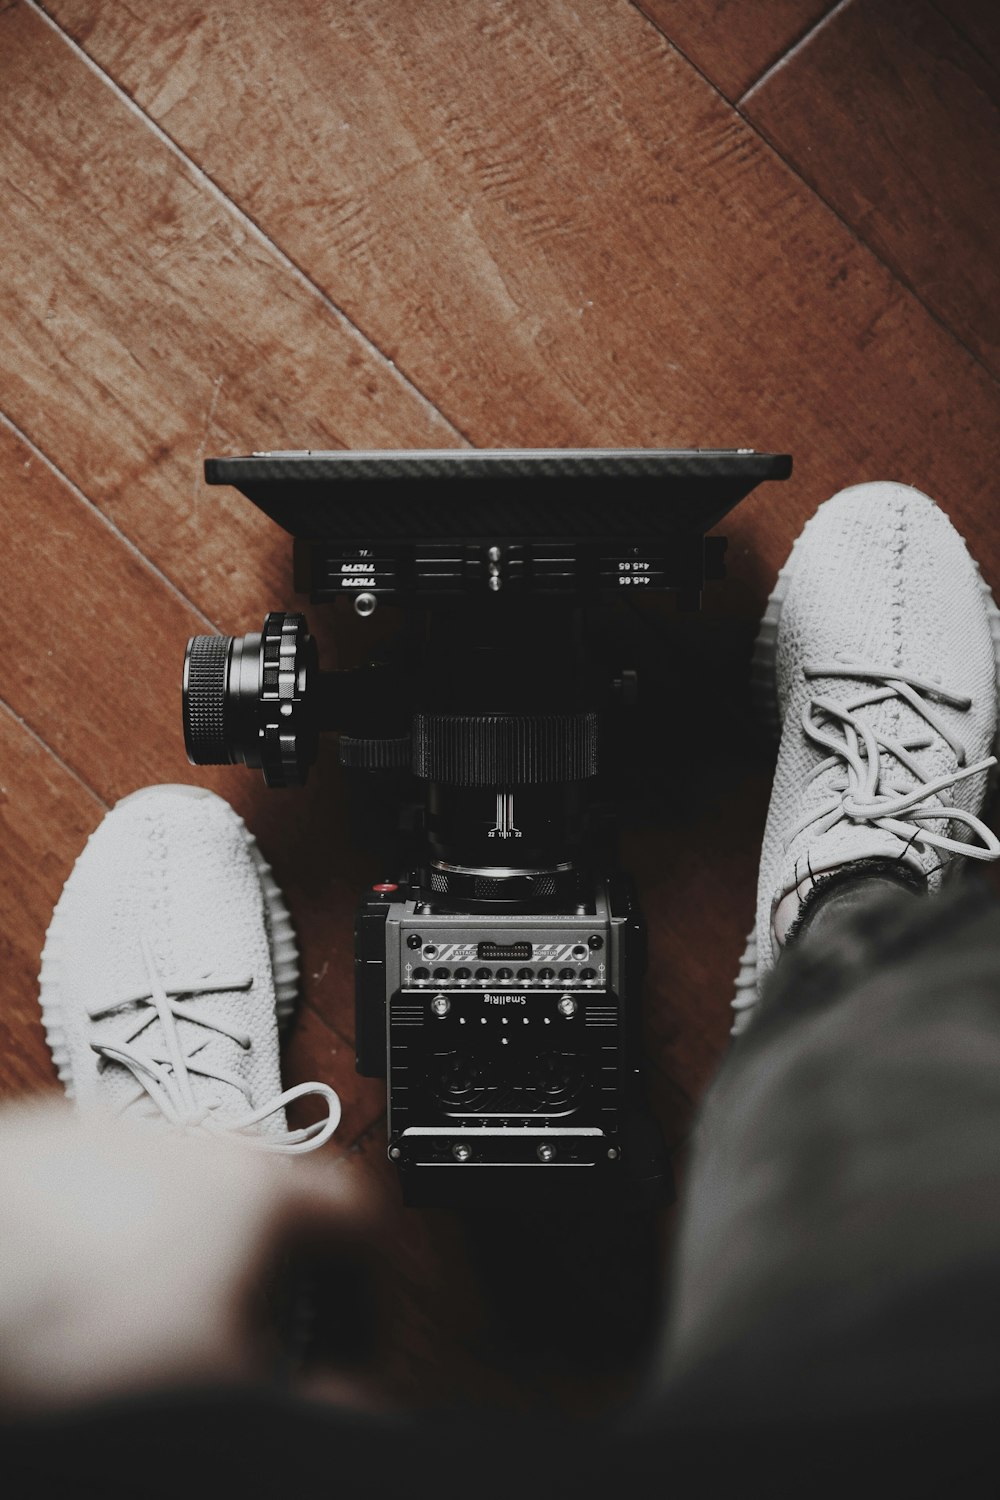 câmera de estúdio preta e prateada entre sapatos